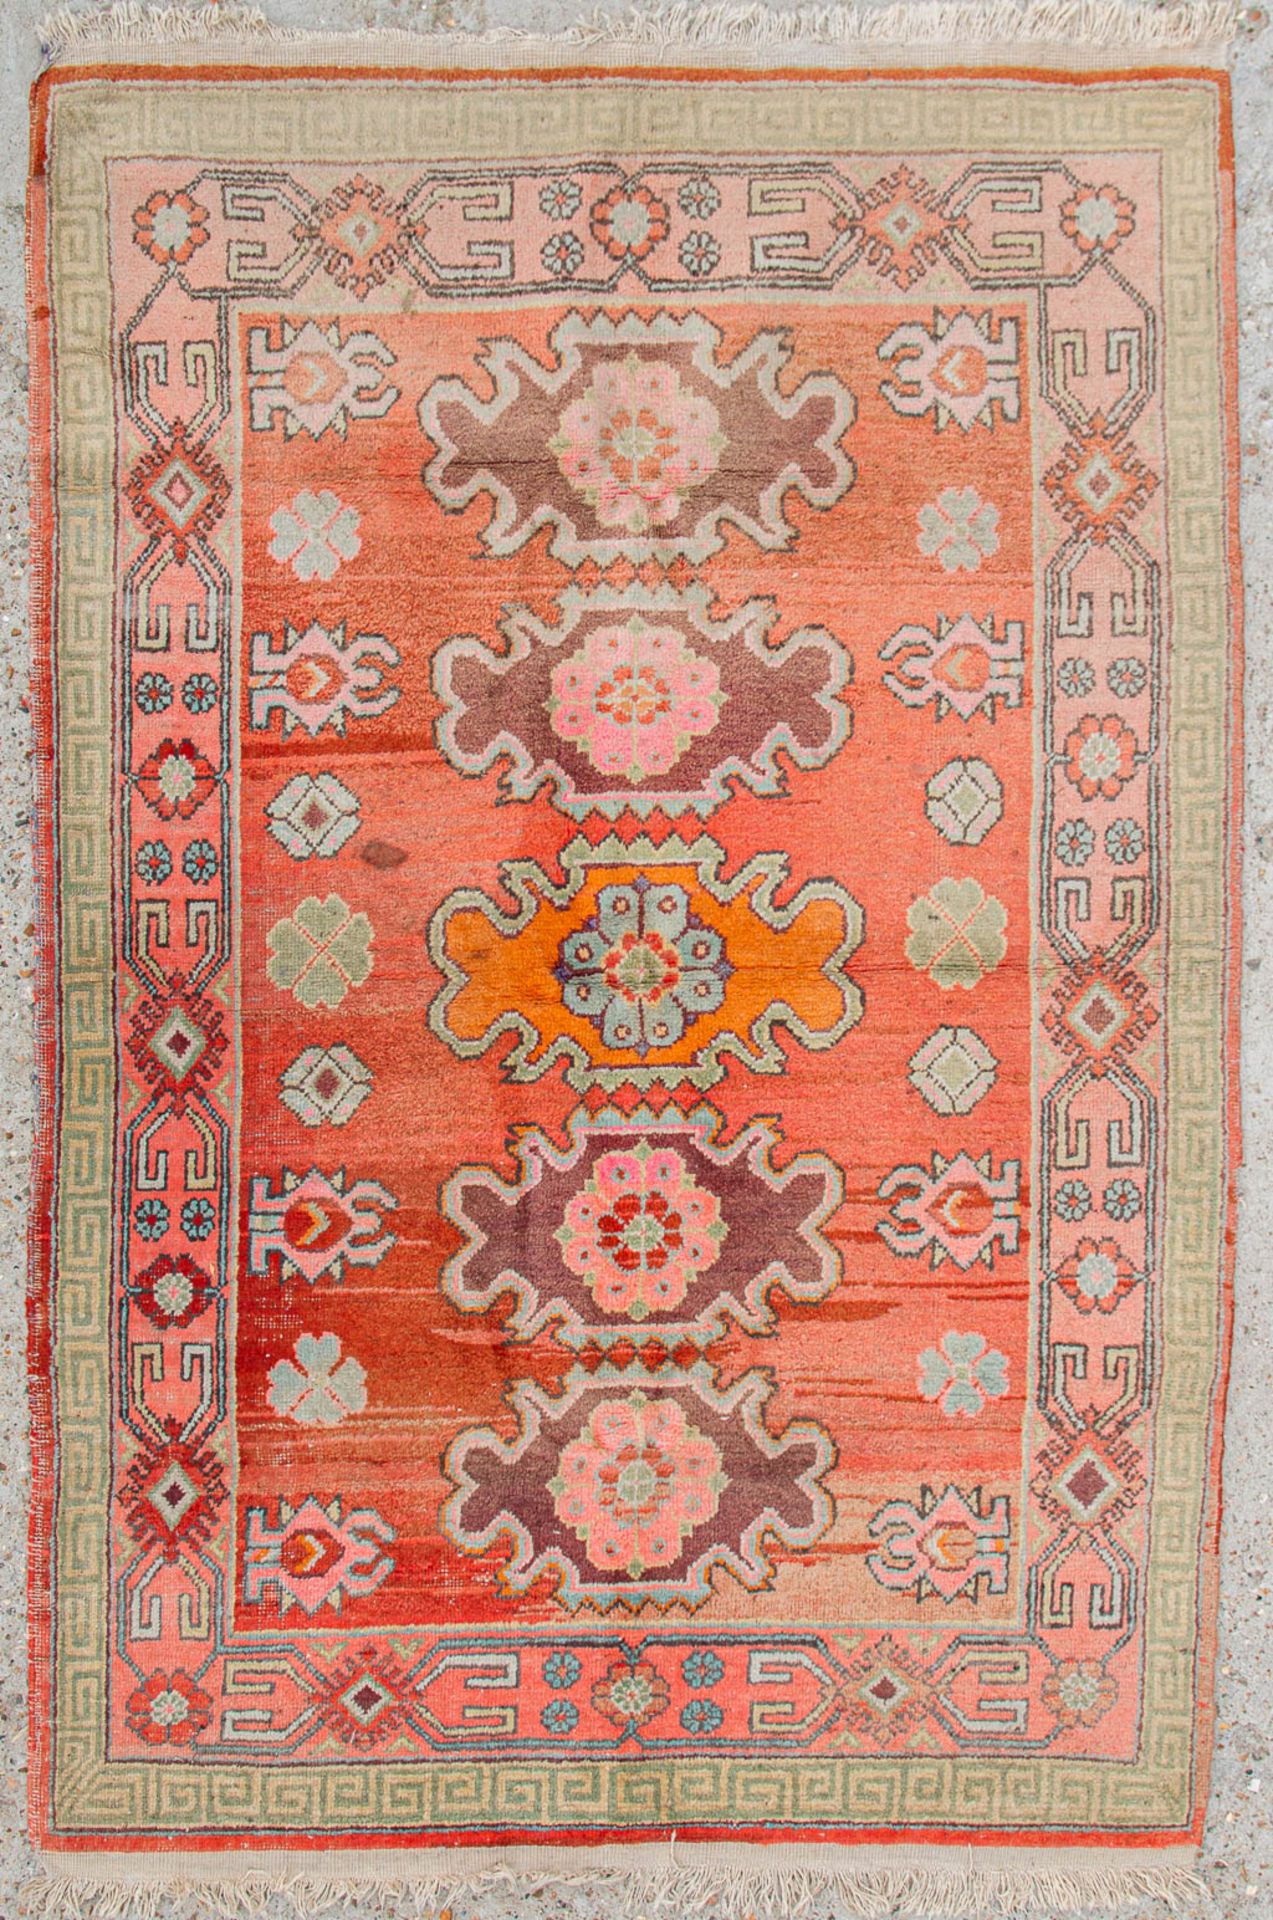 An Oriental hand-made carpet, Samarkand (200 x 135) (200 x 135 cm)